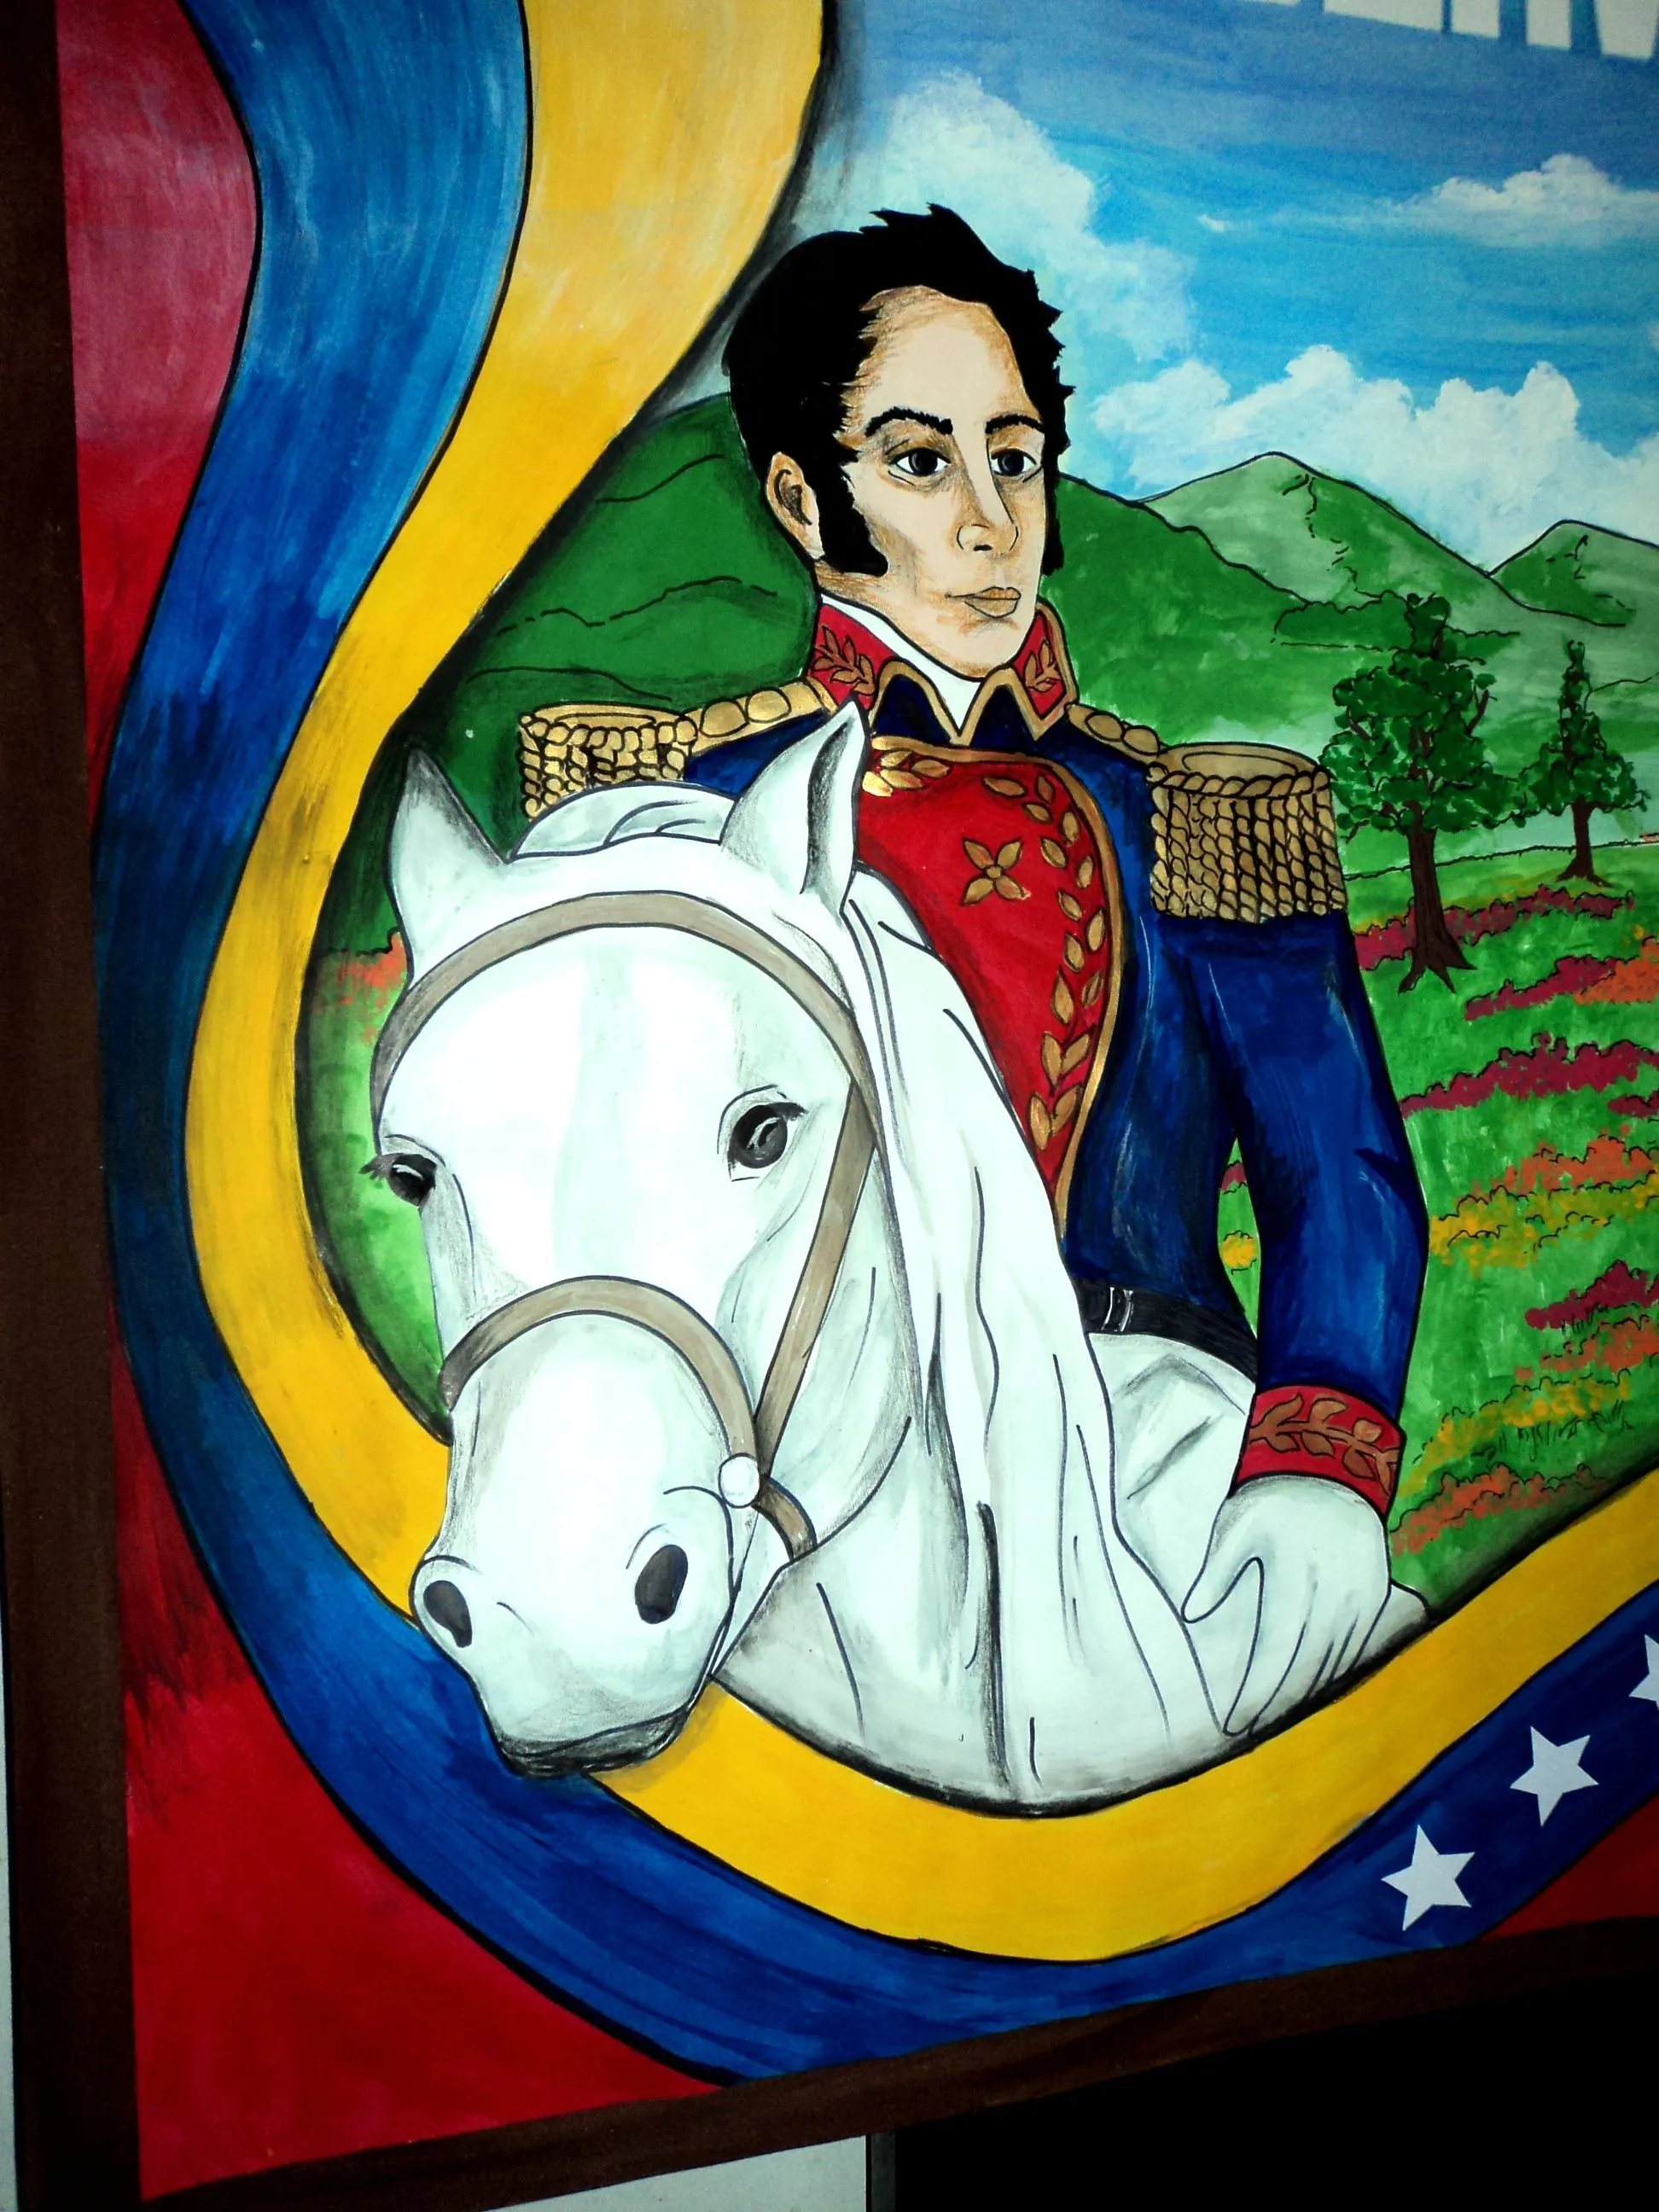 Cartelera escolar. Simón Bolívar Conservacionista. Dibujo, diagramación,  idea e ilustración: Kelly Carrillo Sánchez. | Colombian culture, Anime, Simon  bolivar